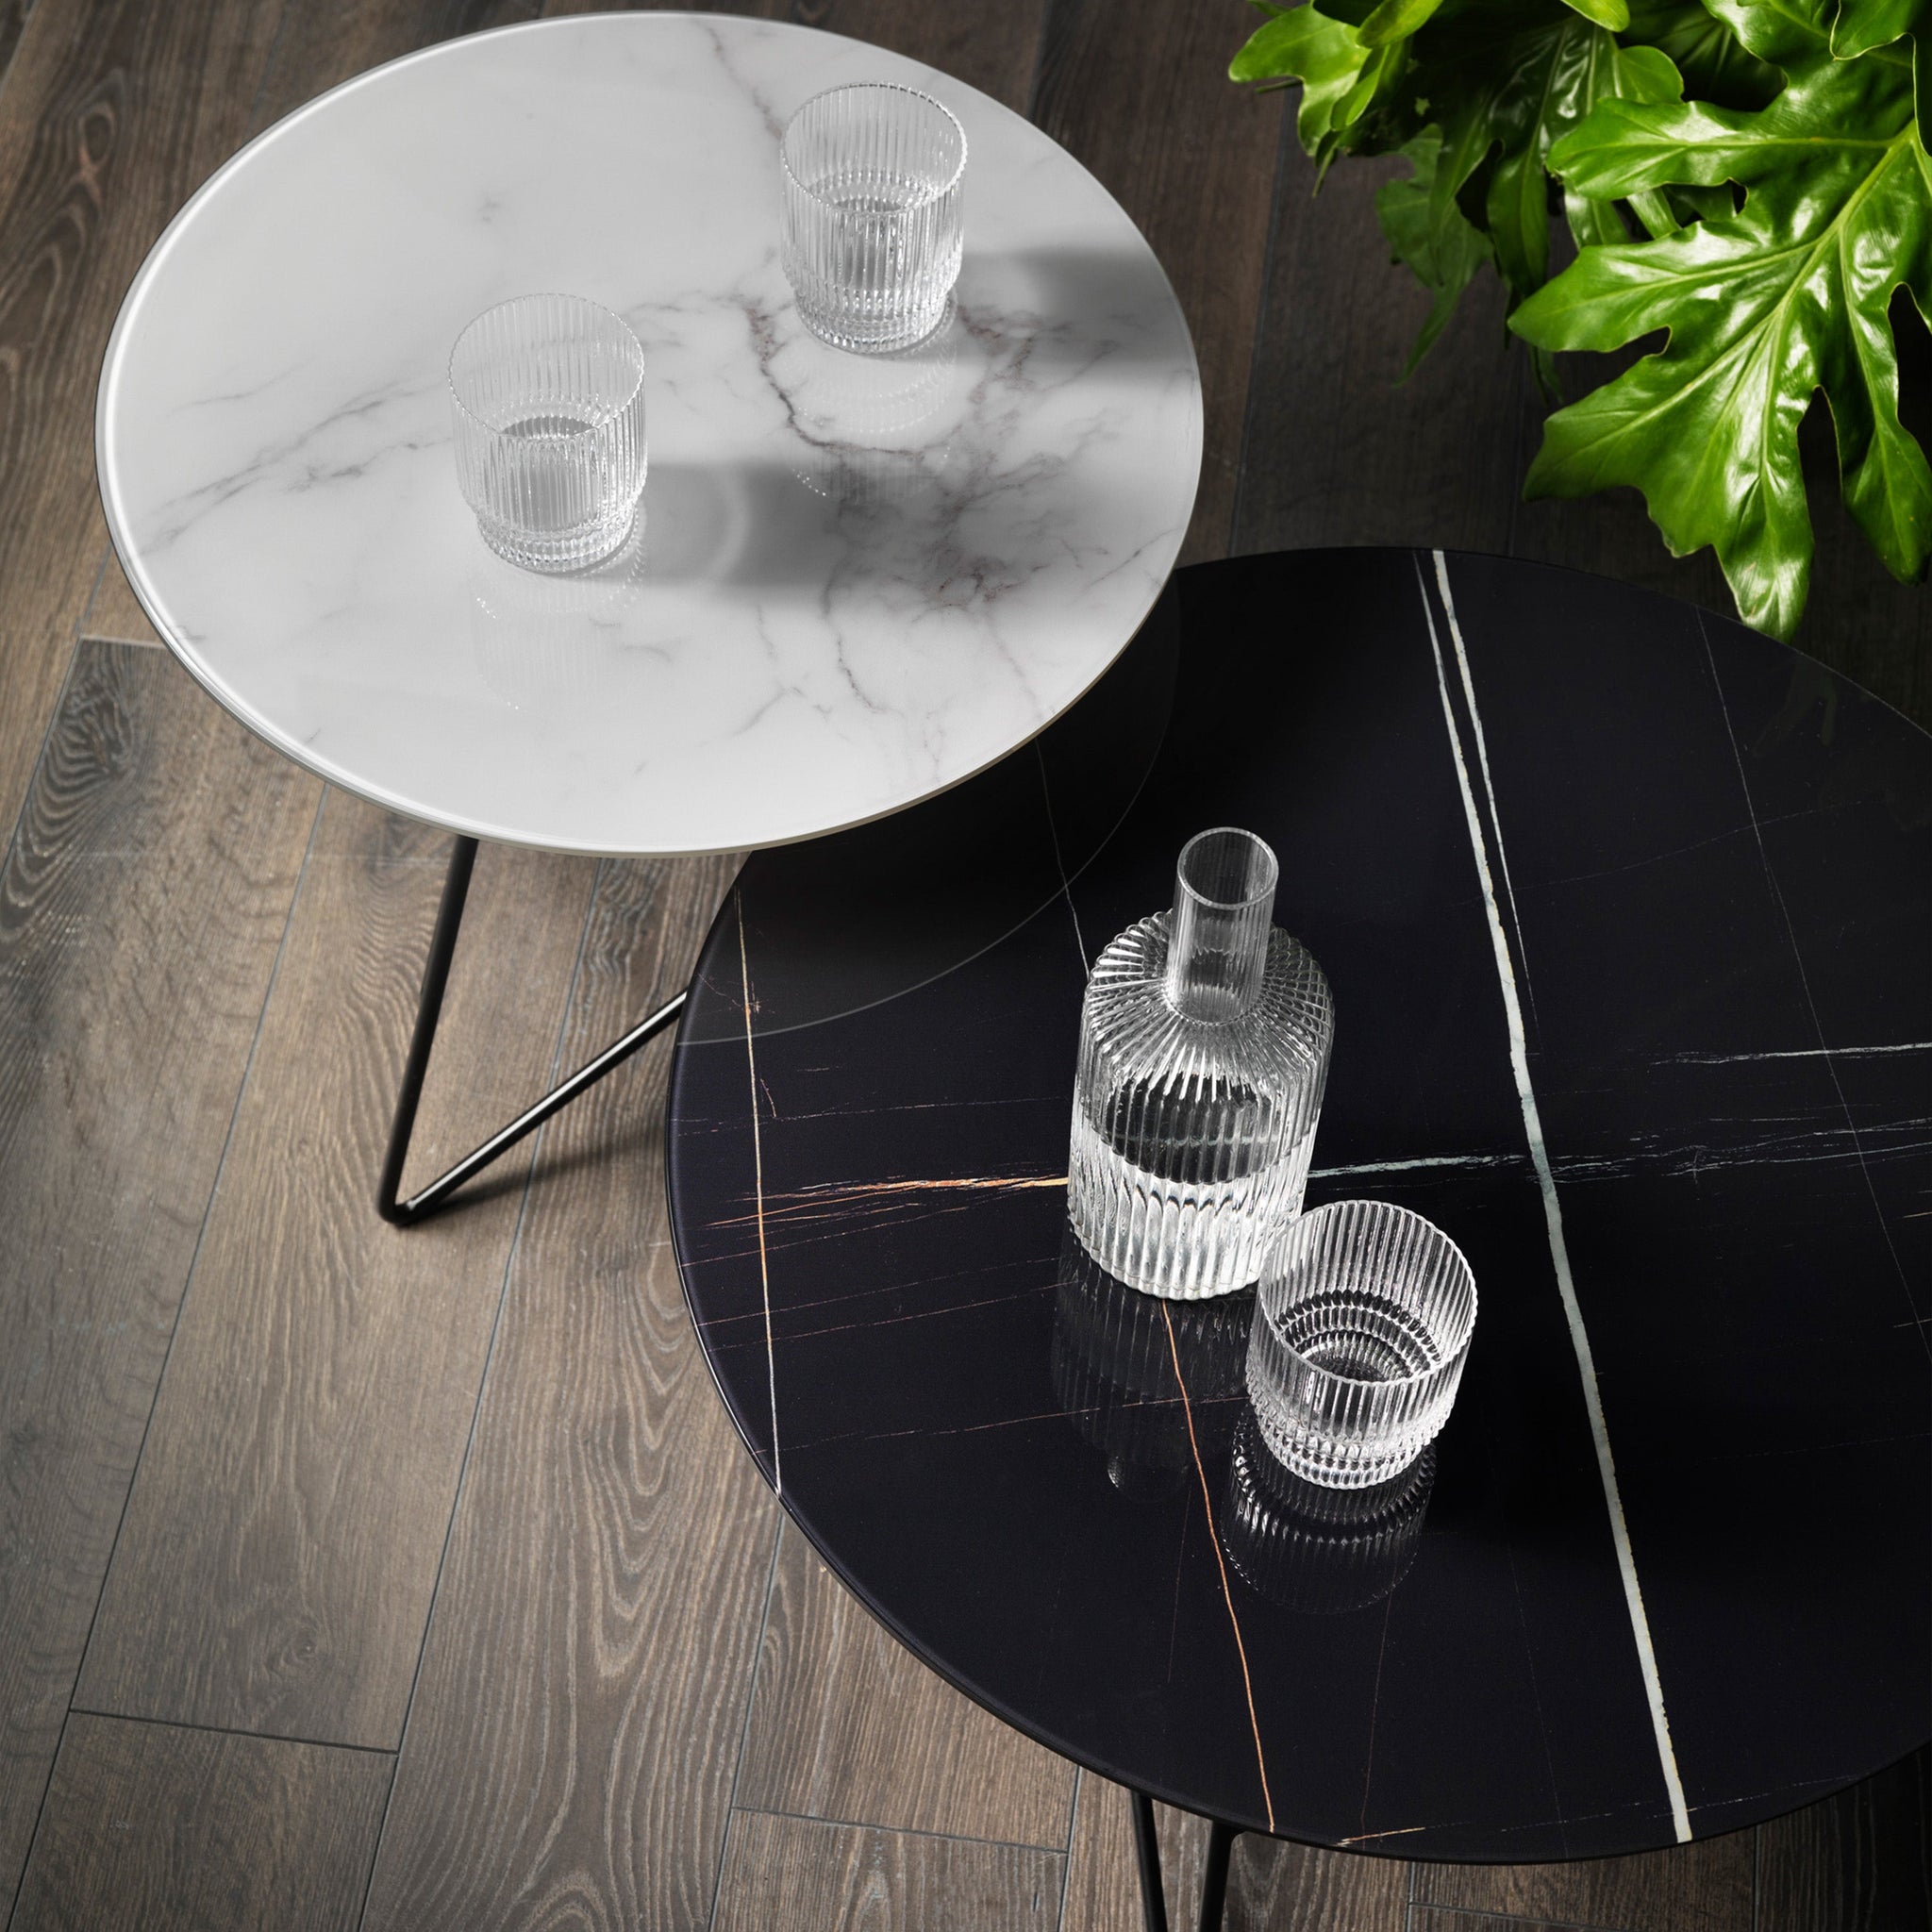 Ermione table basse ronde pour salon avec plateau en verre marbre blanc calacatta h44